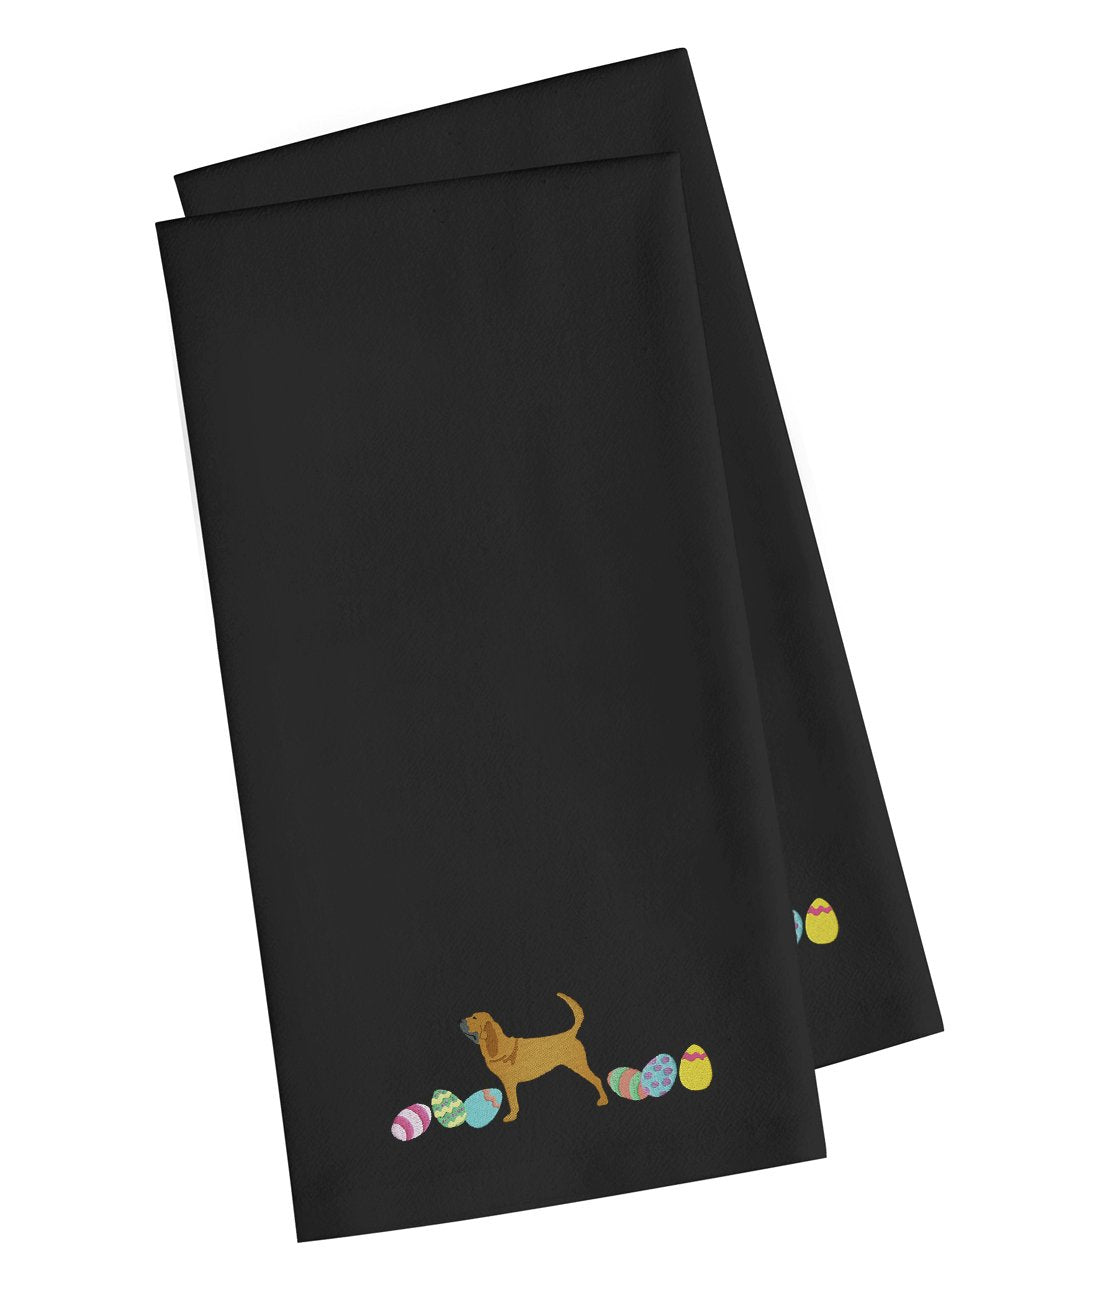 Bloodhound Easter Black Embroidered Kitchen Towel Set of 2 CK1612BKTWE by Caroline's Treasures